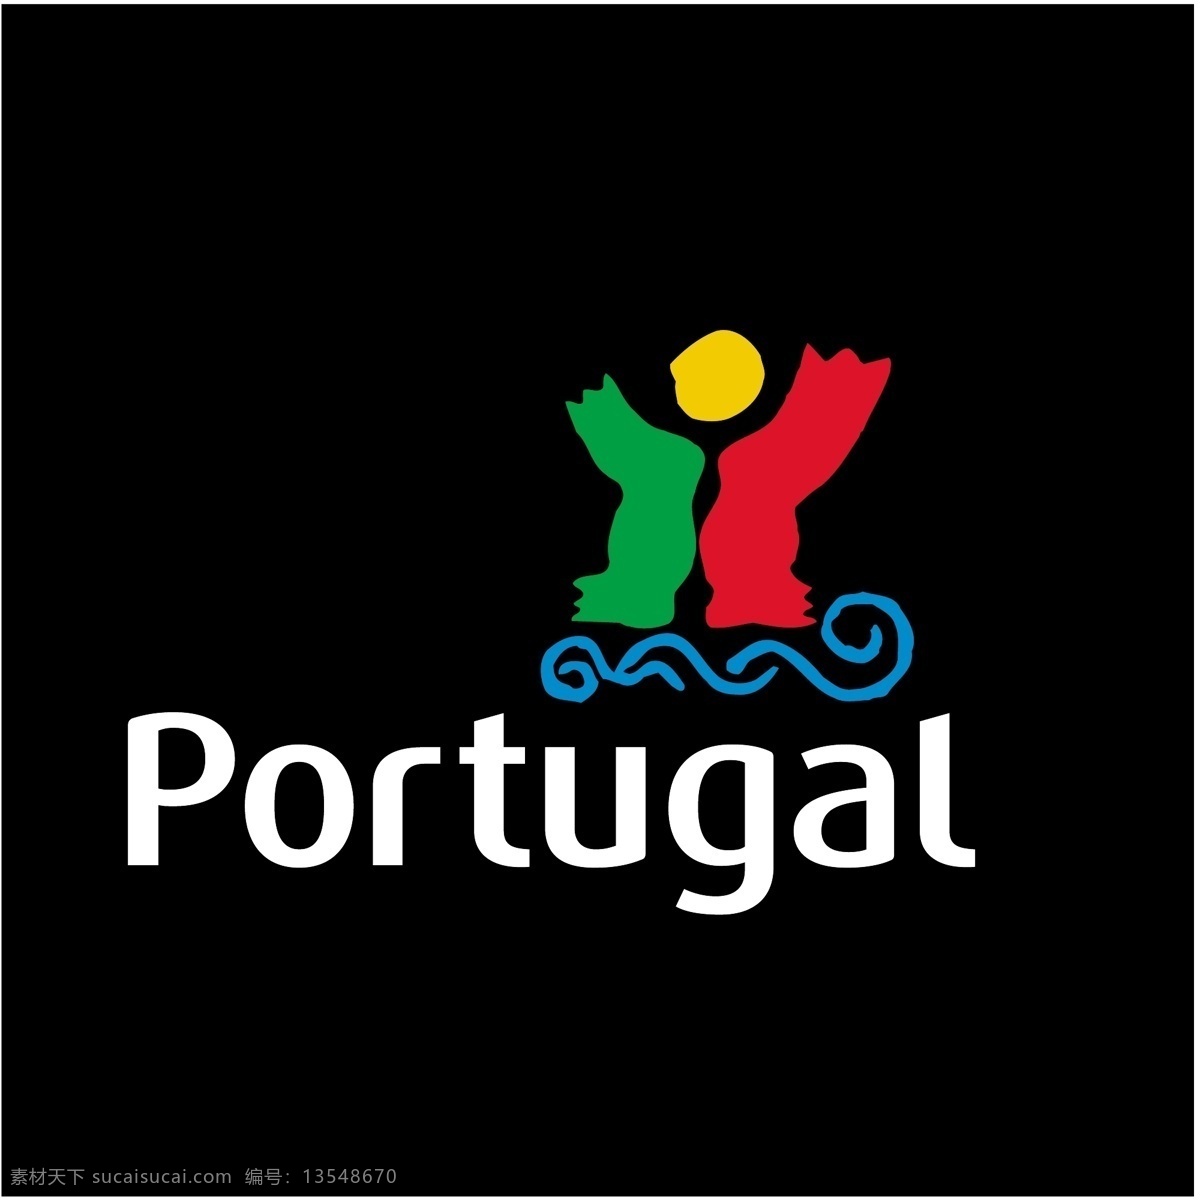 矢量艺术 葡萄牙 国旗 矢量 埃斯库多 免费 艺术 标志 夹 欧洲杯 2004 欧元 自由 赛车葡萄牙 向量 矢量图 建筑家居